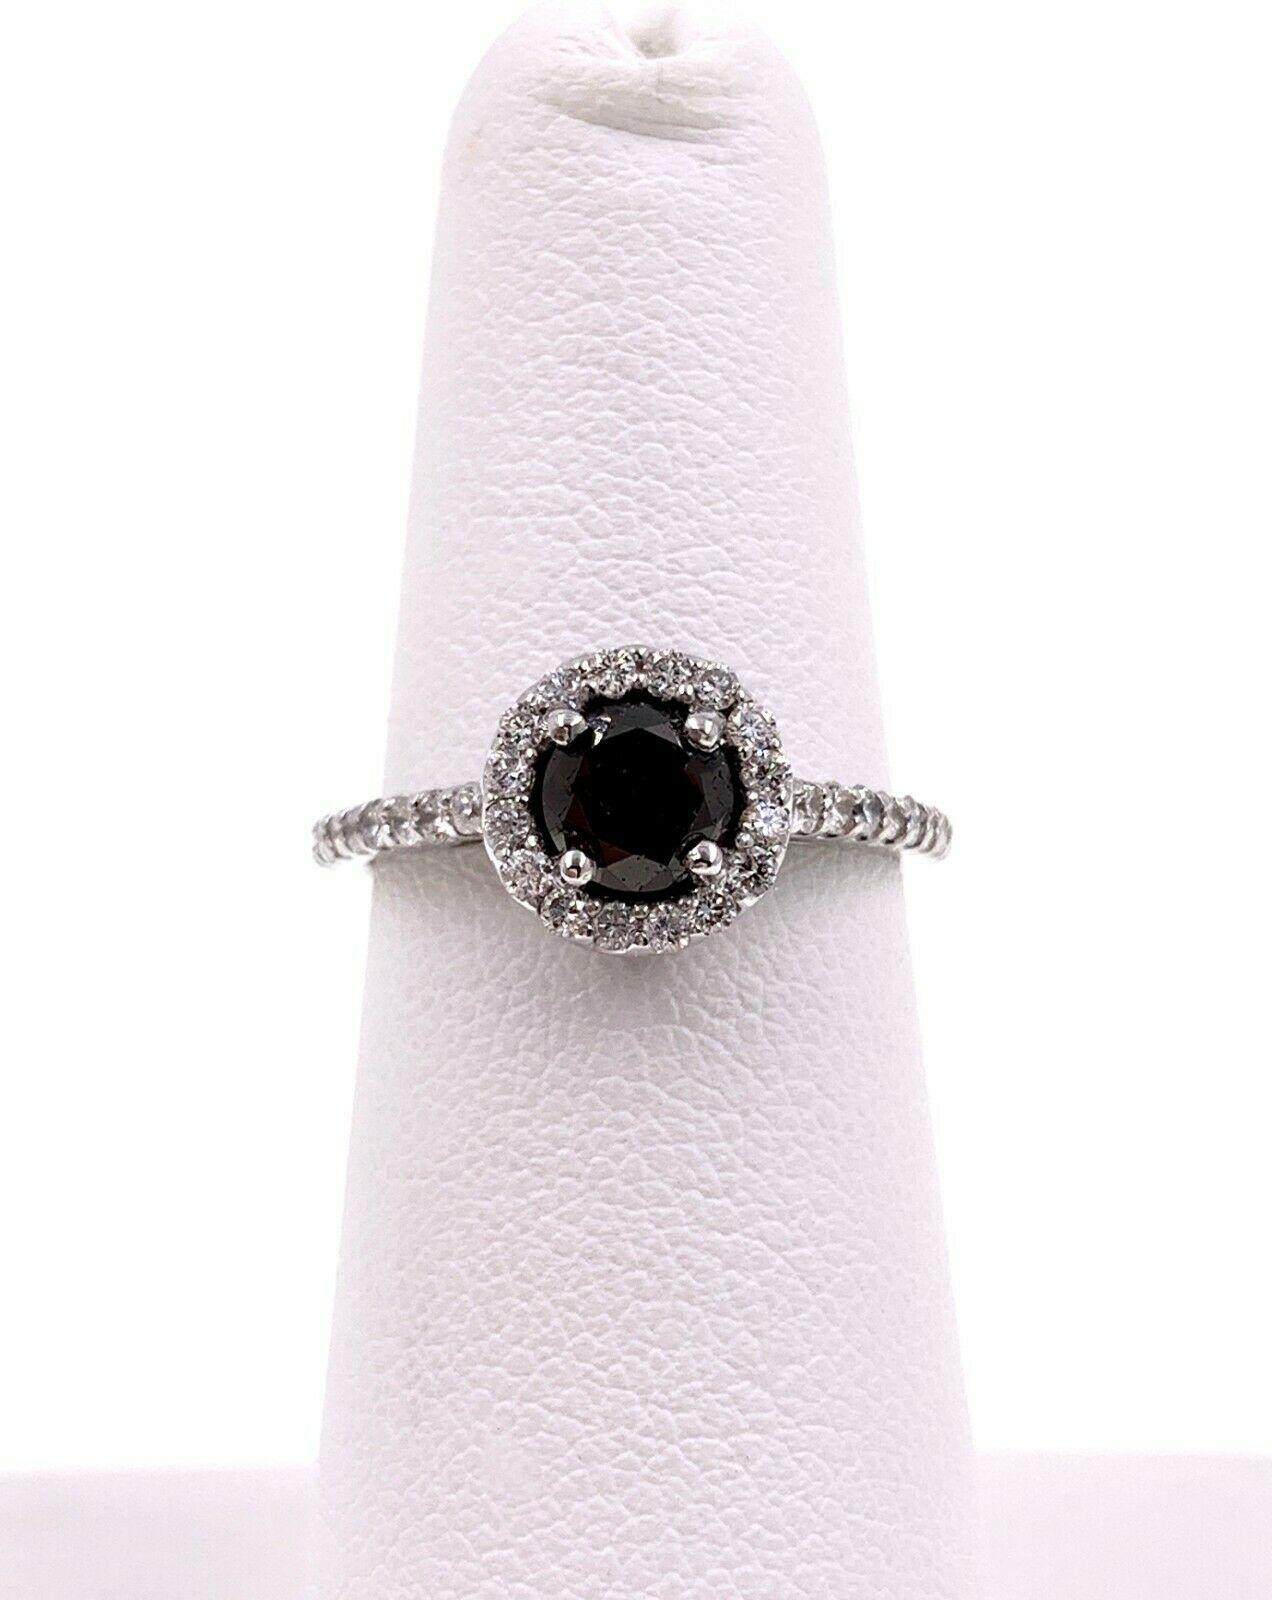 Black Diamond Halo Engagement Ring 1.32 Carat 14 Karat White Gold For Sale 1